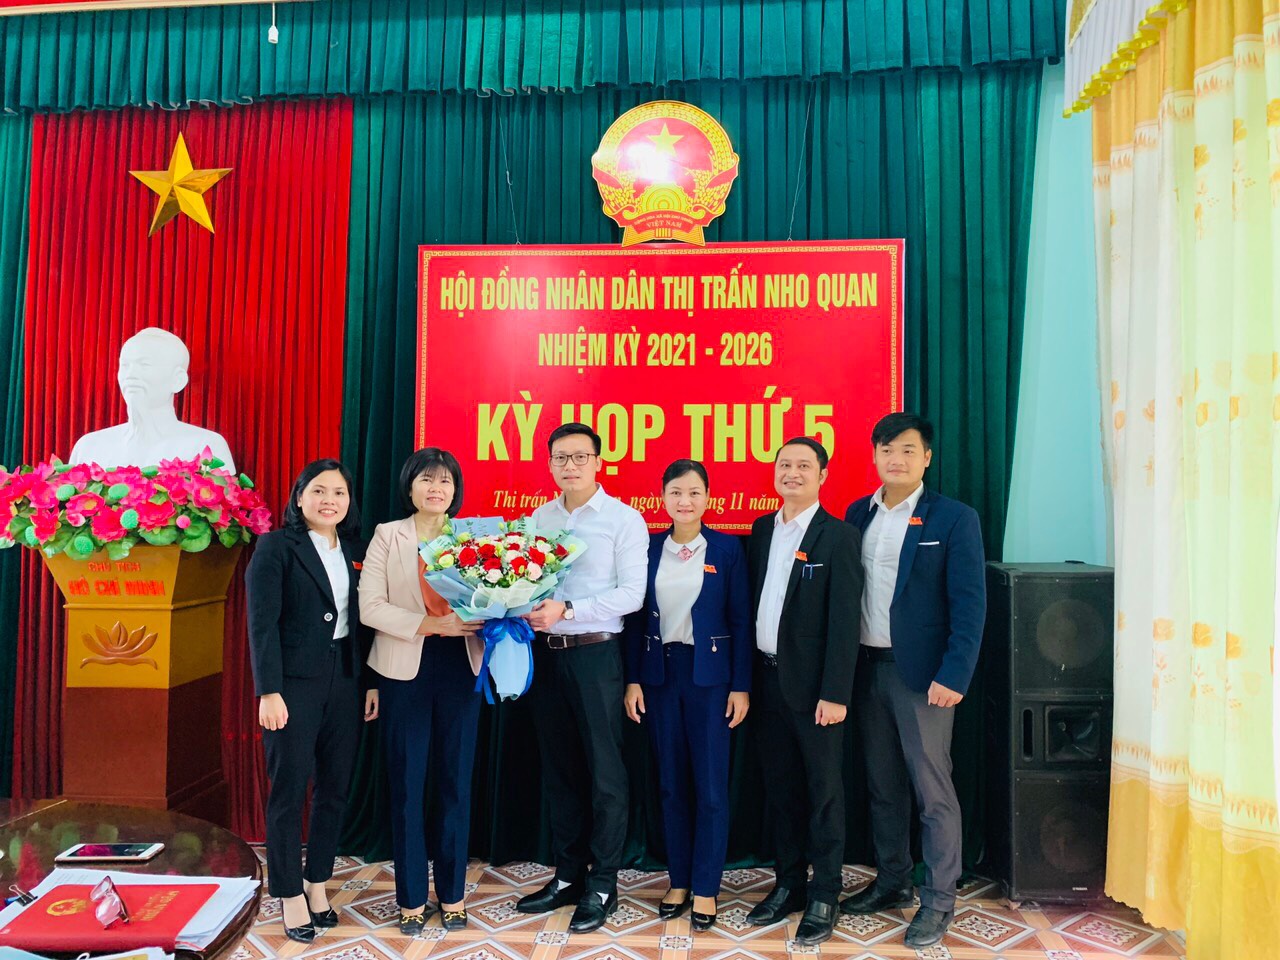 Kỳ họp thứ 5 - Hội đồng nhân dân thị trấn Nho Quan, nhiệm kỳ 2021 - 2026.